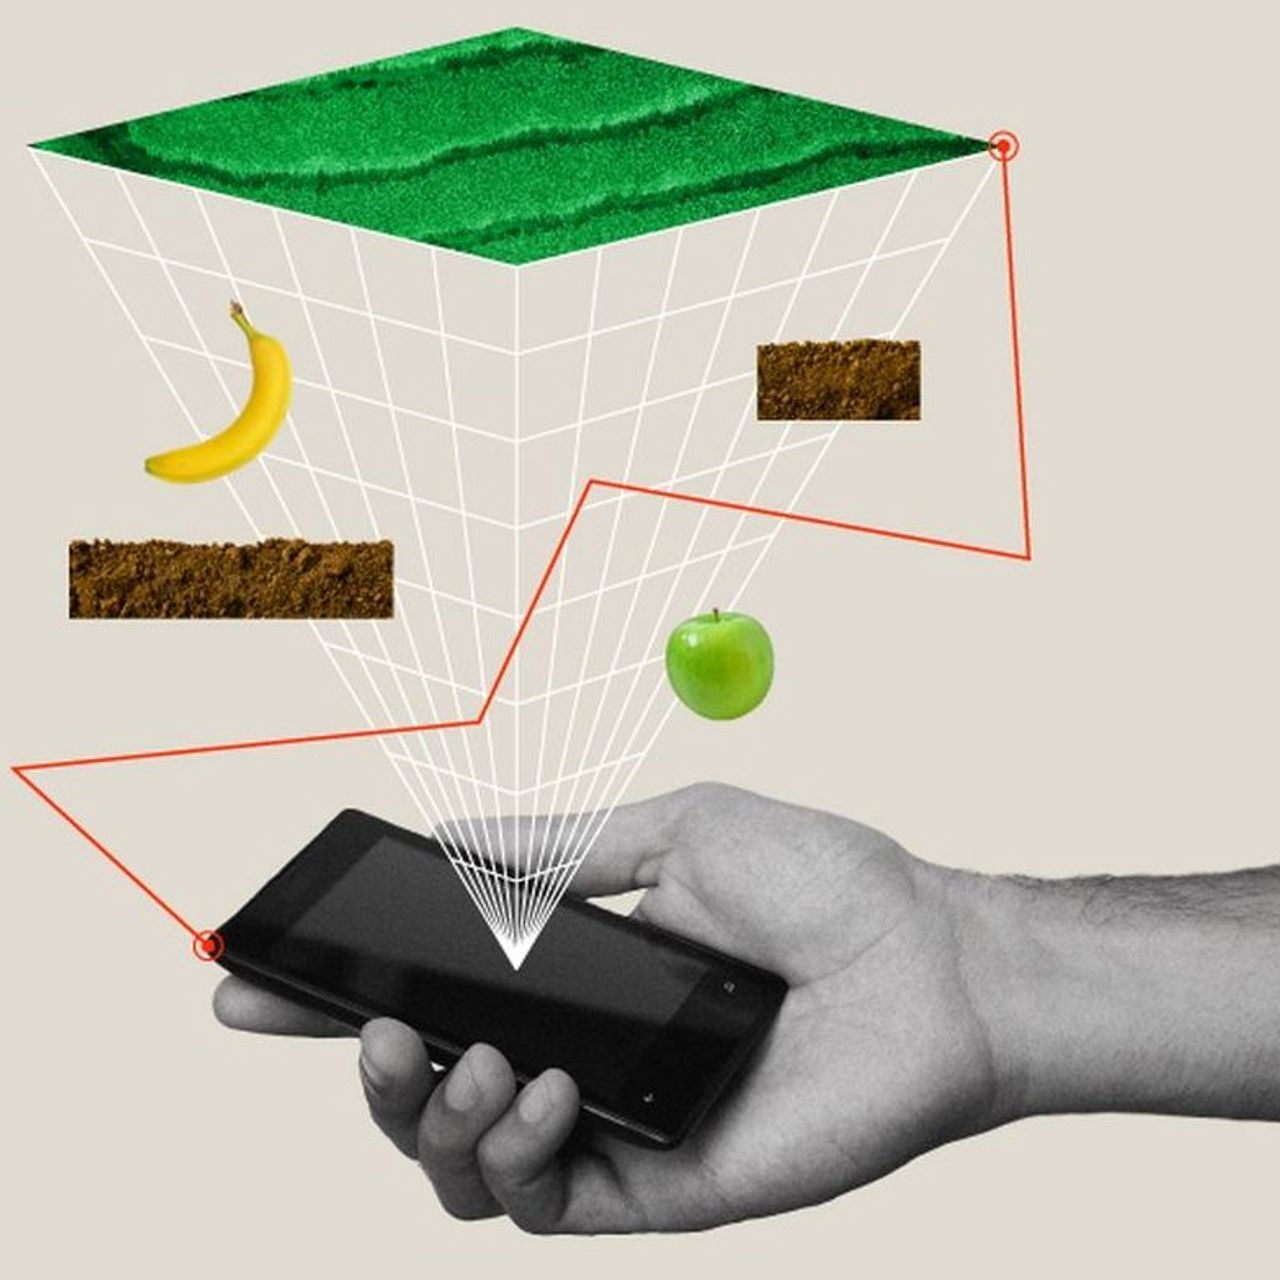 En illustration av hjälpen av en schweizisk app för att konservera mat